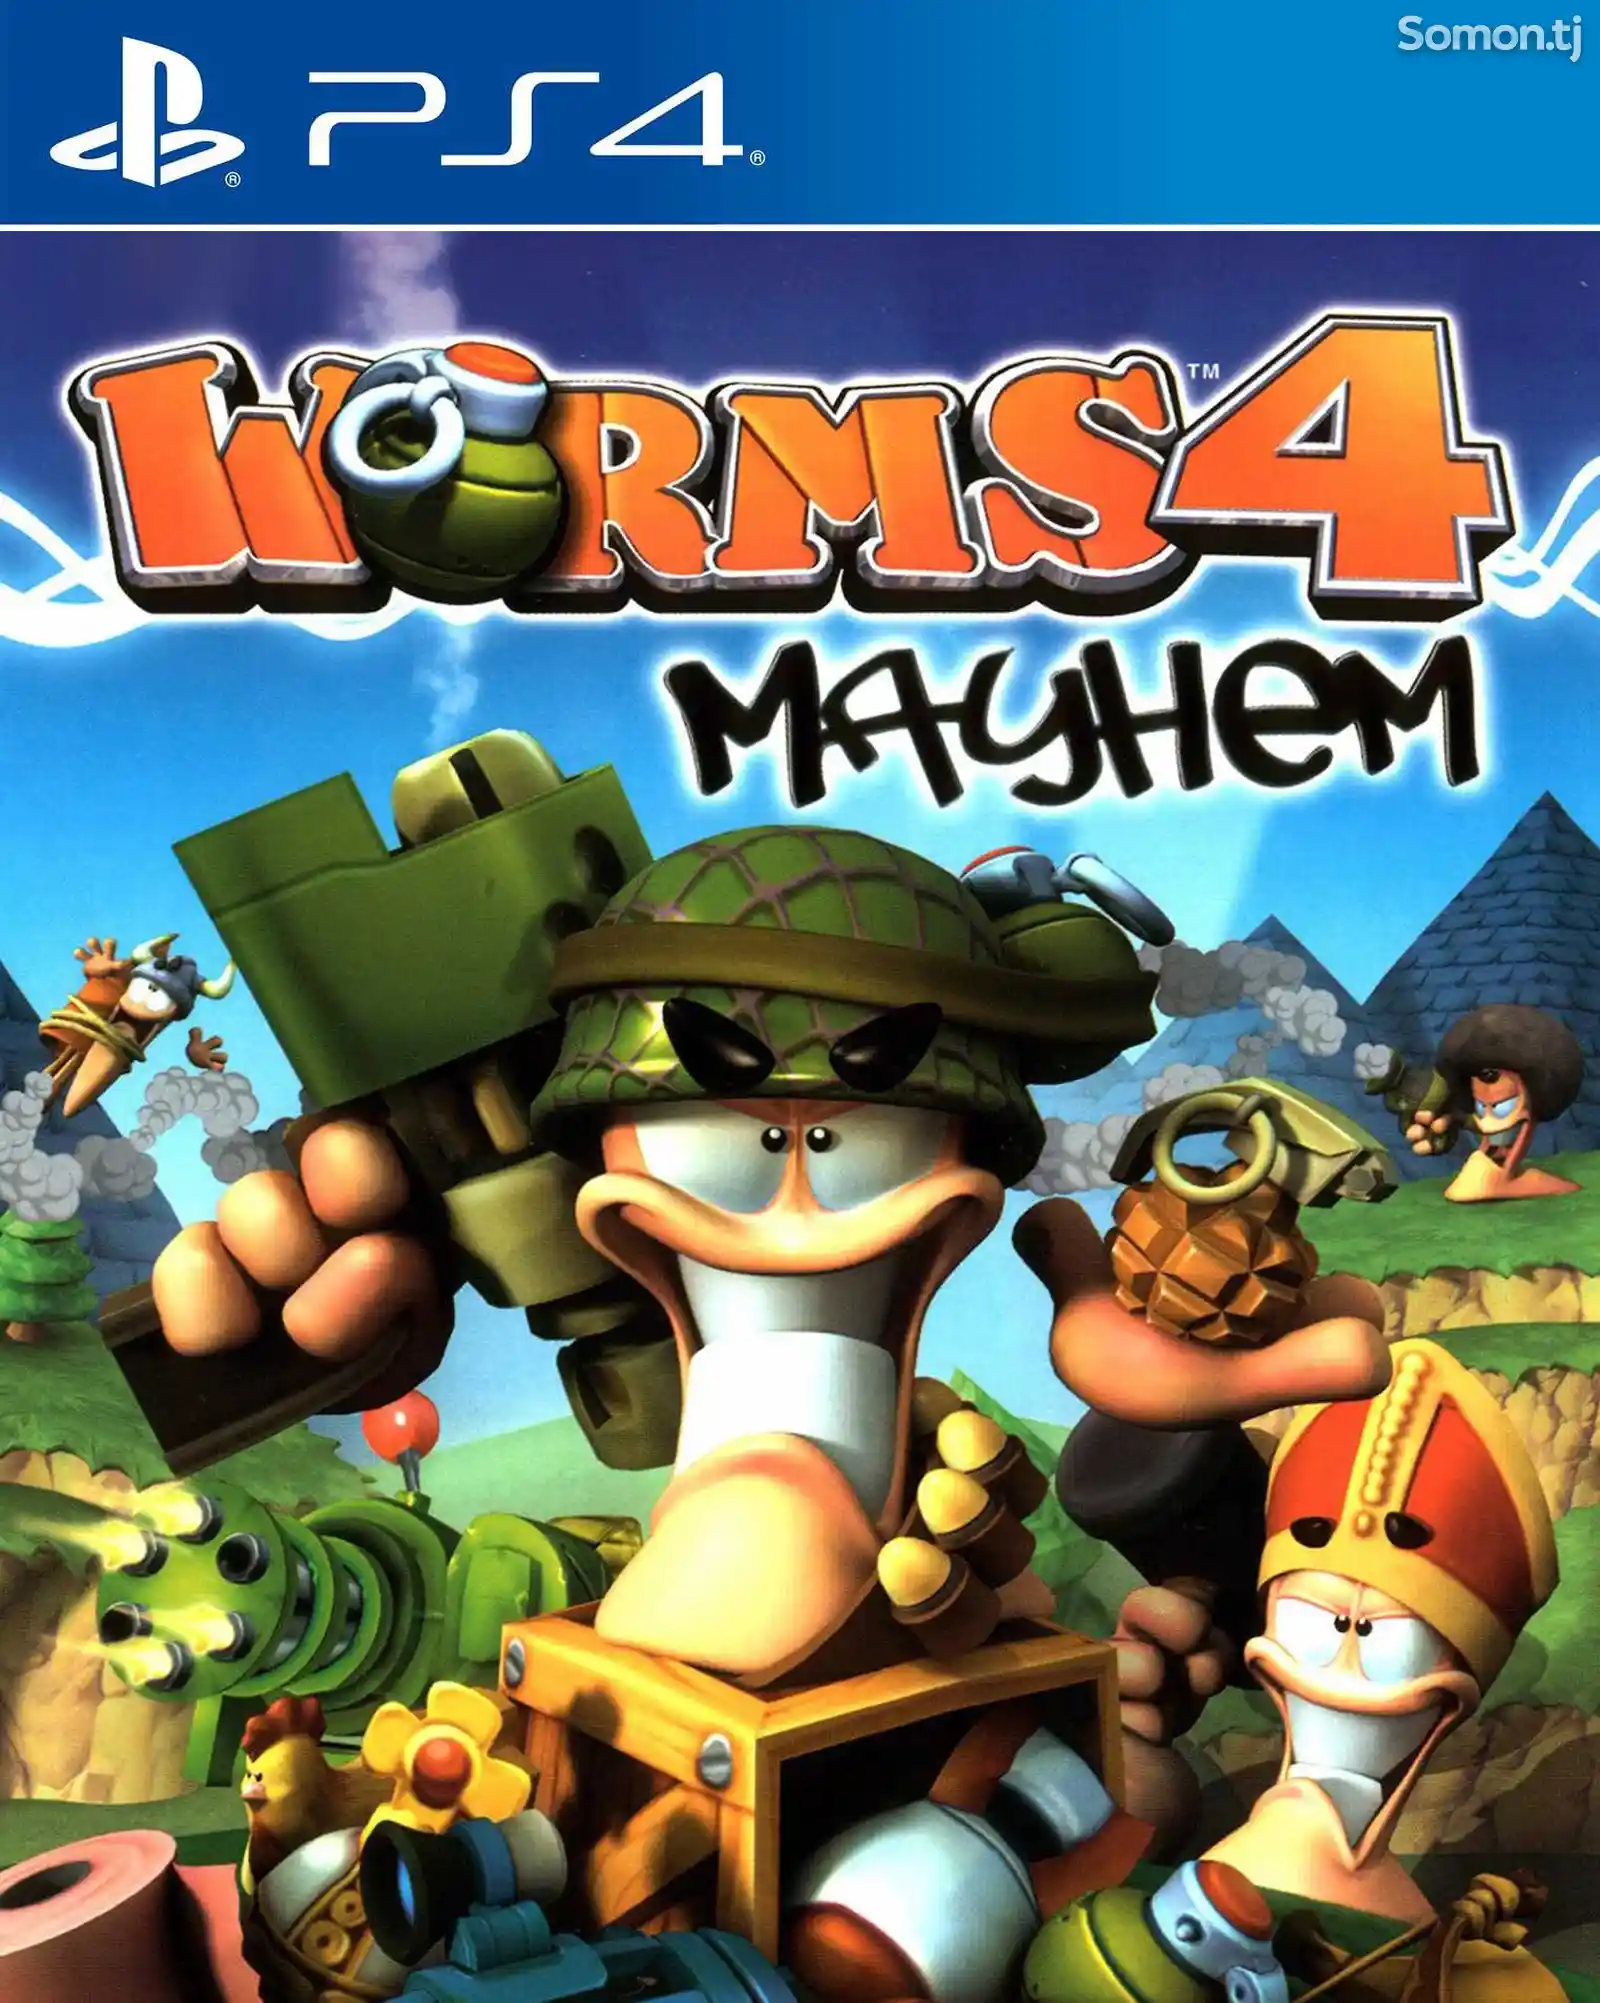 Игра Worms 4 mayhem для PS-4 / 5.05 / 6.72 / 7.02 / 7.55 / 9.00 /-1